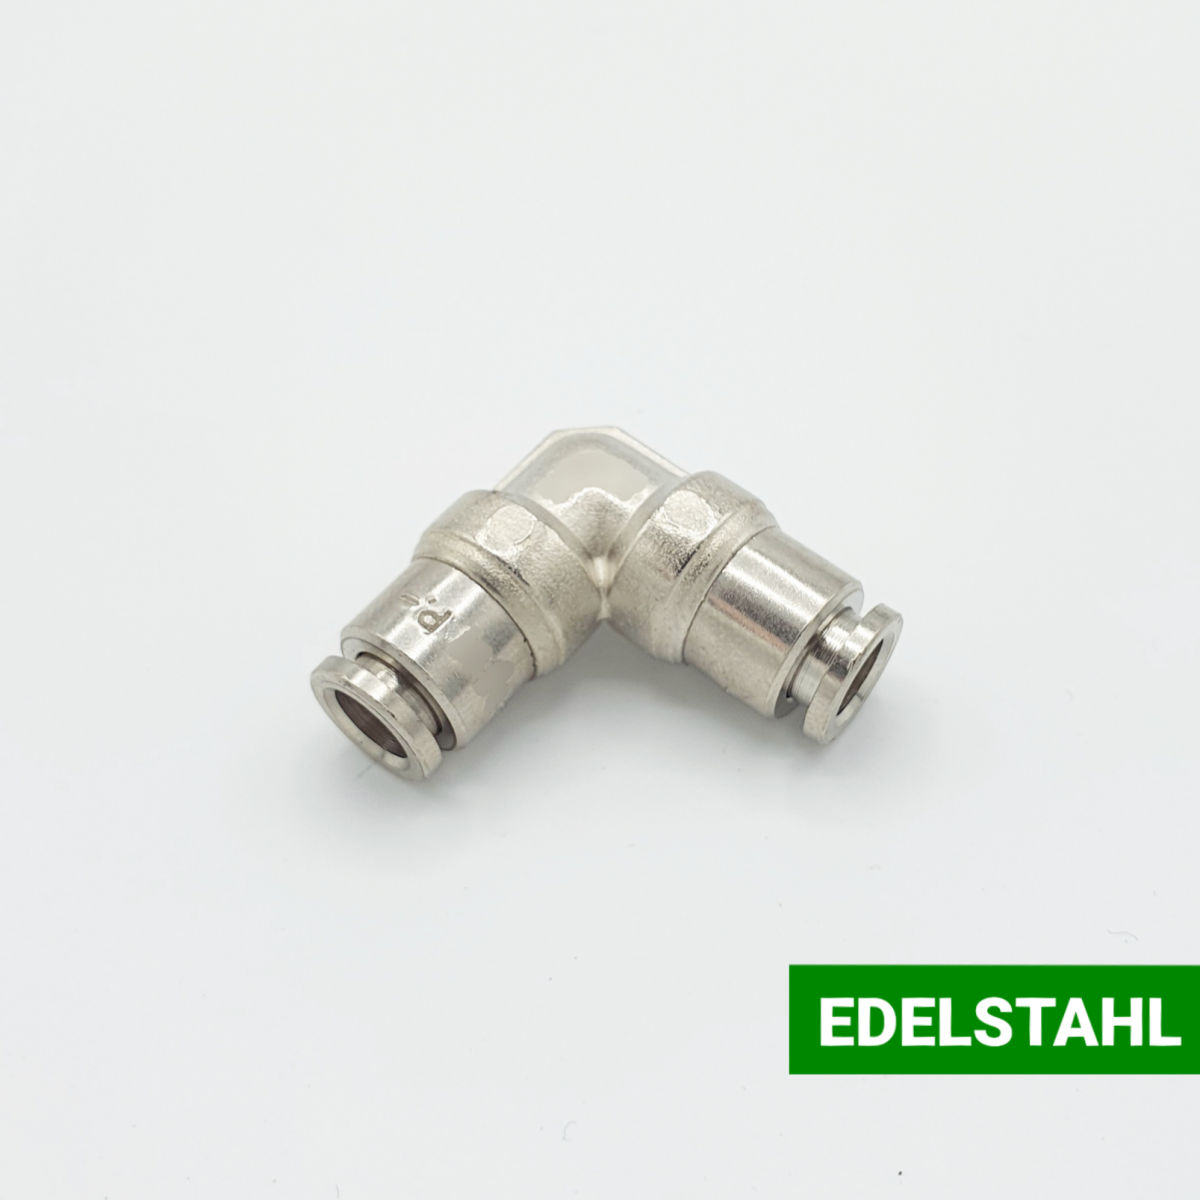 Edelstahl-Schnellsteckverbindung / Winkel | Beta Online Shop